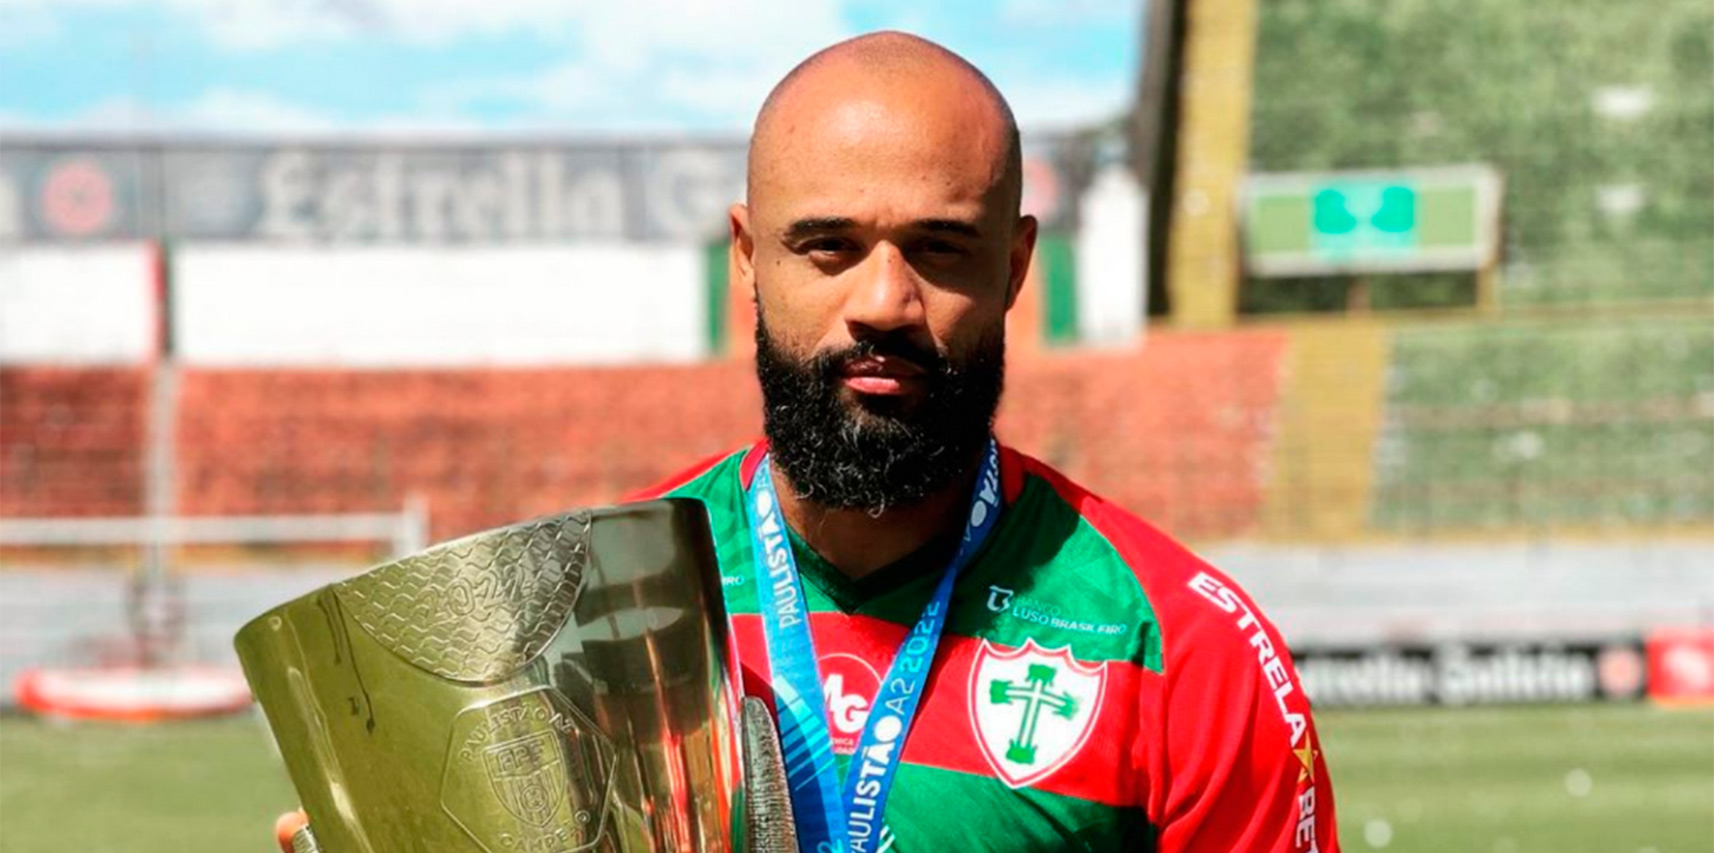 Jogador de futebol de Vargem Alta é campeão da Série A2 do Campeonato Paulista pela equipe da Portuguesa